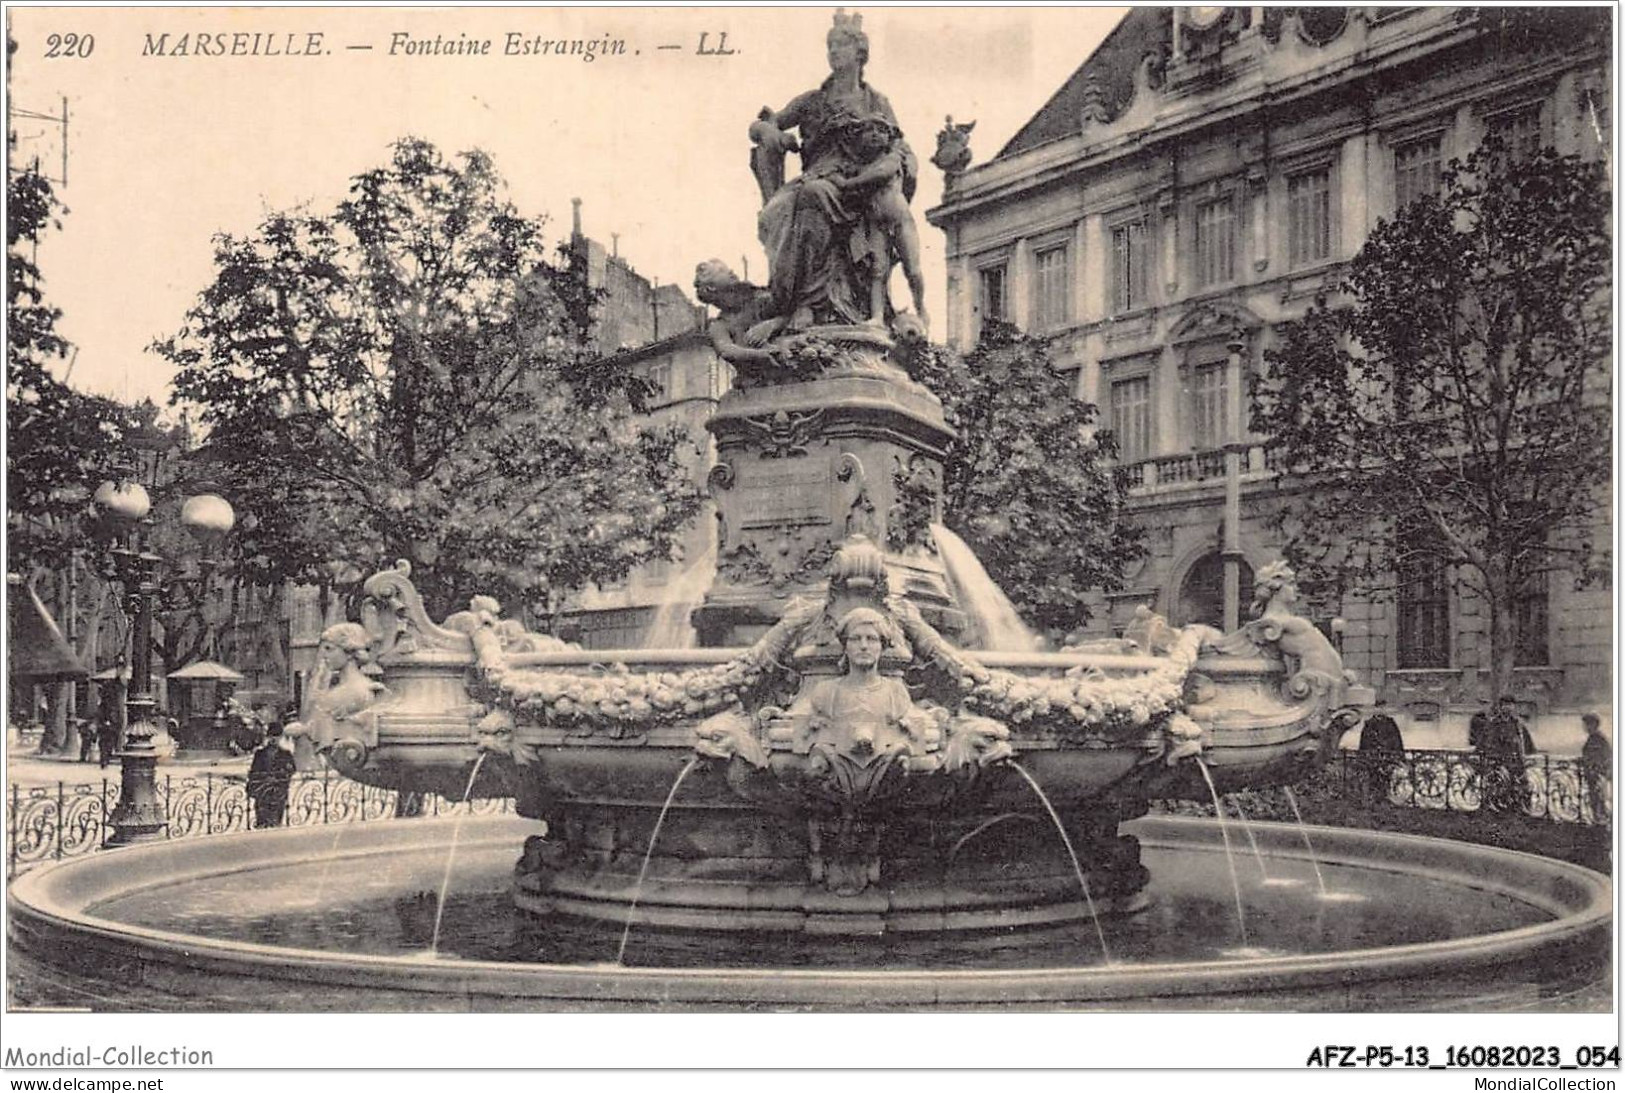 AFZP5-13-0374 - MARSEILLE - Fontaine Estrangin - Monuments